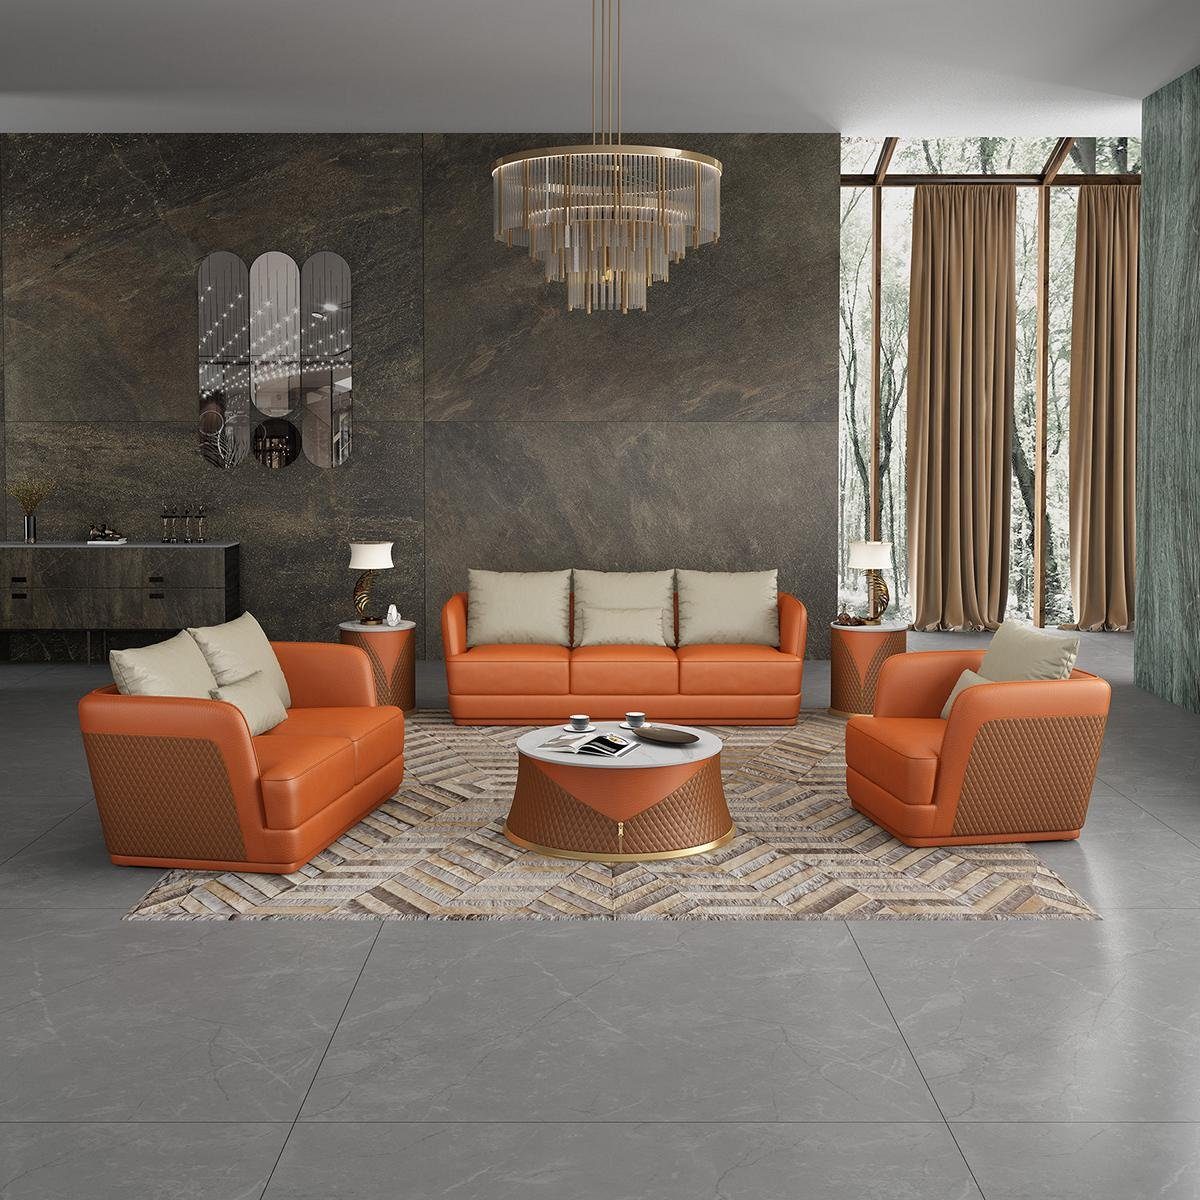 JVmoebel Wohnzimmer-Set, Sofagarnitur 3 1 Sitzer Set Design Sofa Polster Couchen Couch Modern Orange